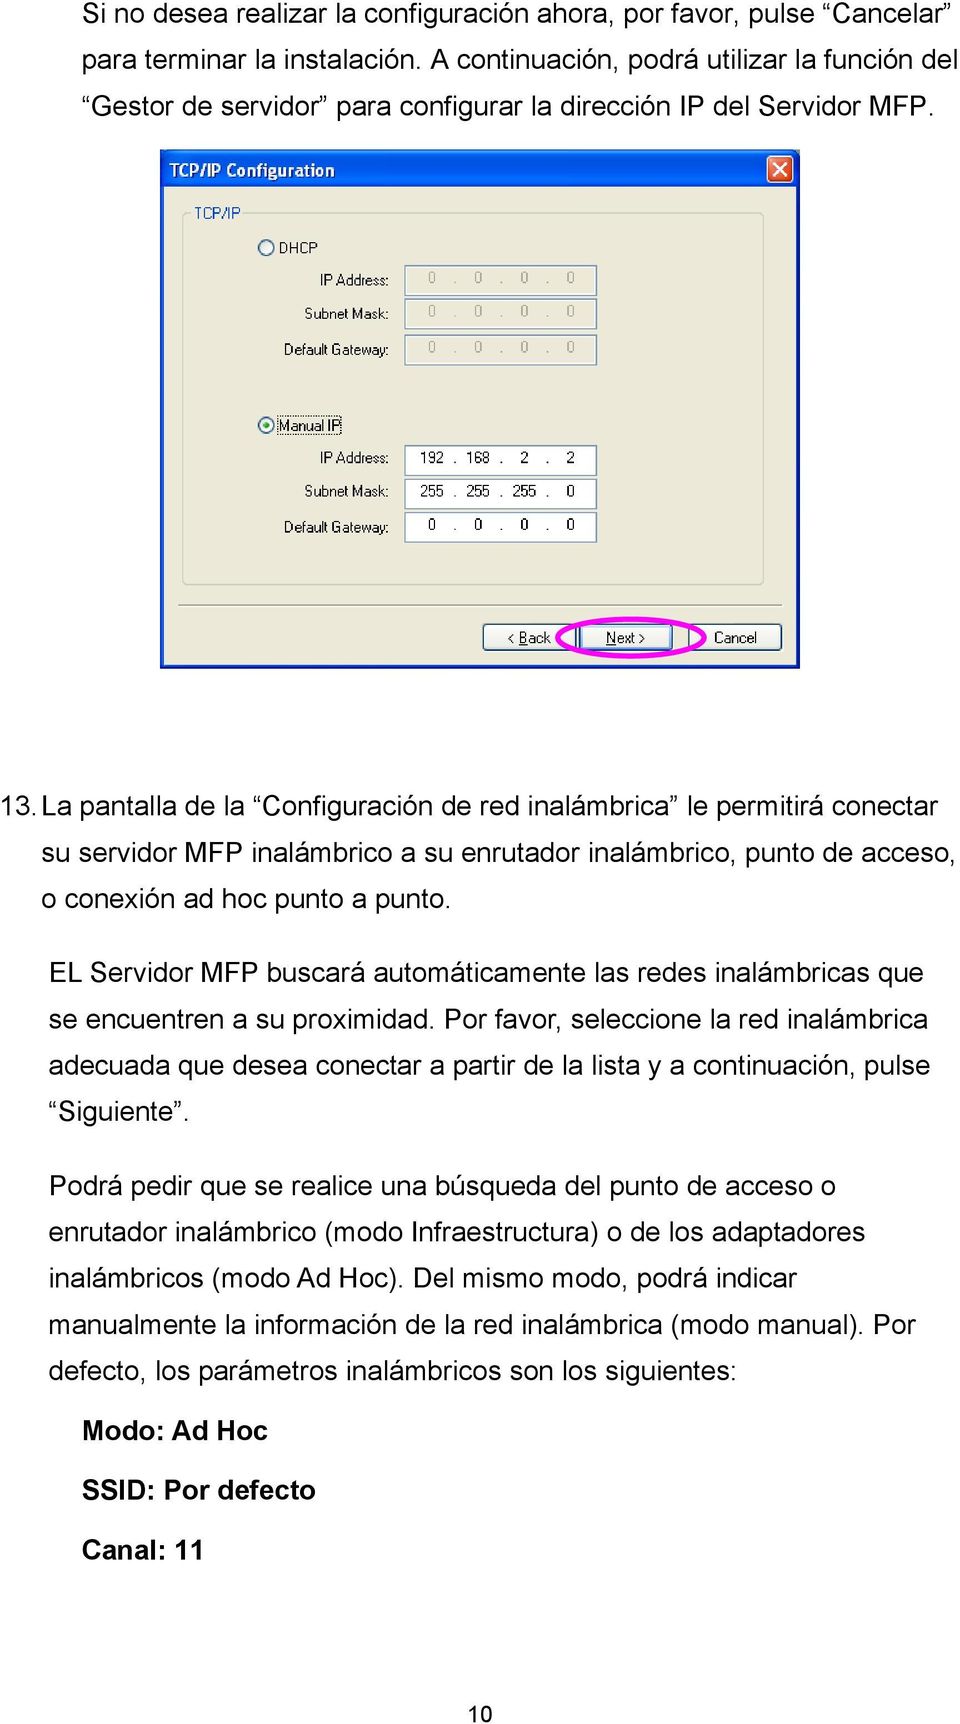 La pantalla de la Configuración de red inalámbrica le permitirá conectar su servidor MFP inalámbrico a su enrutador inalámbrico, punto de acceso, o conexión ad hoc punto a punto.